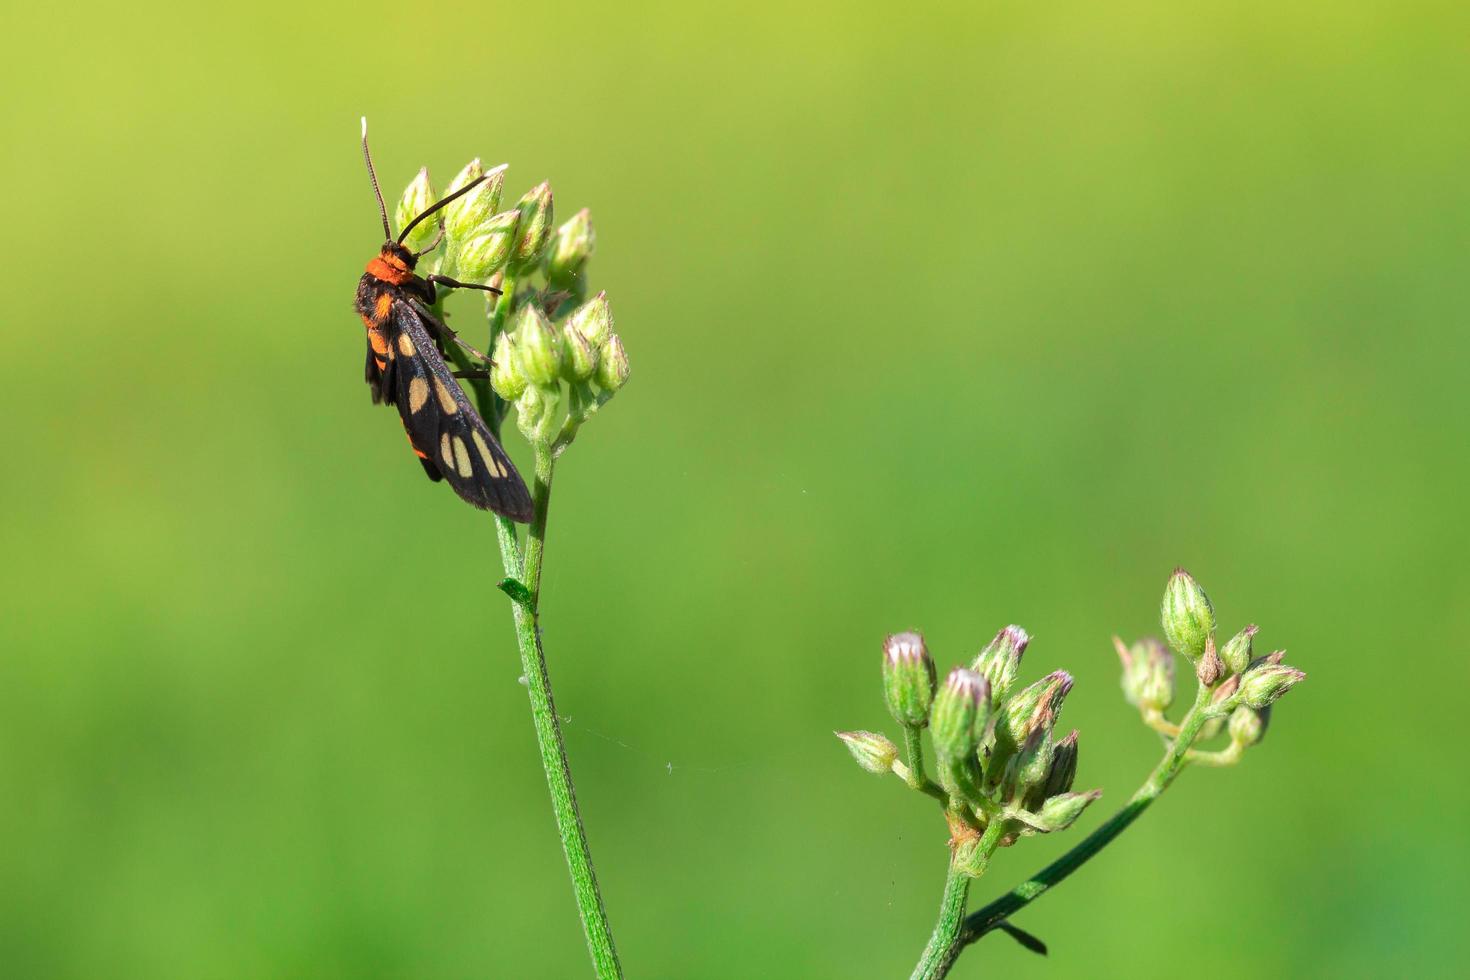 primo piano falena vespa sui fiori di erba foto